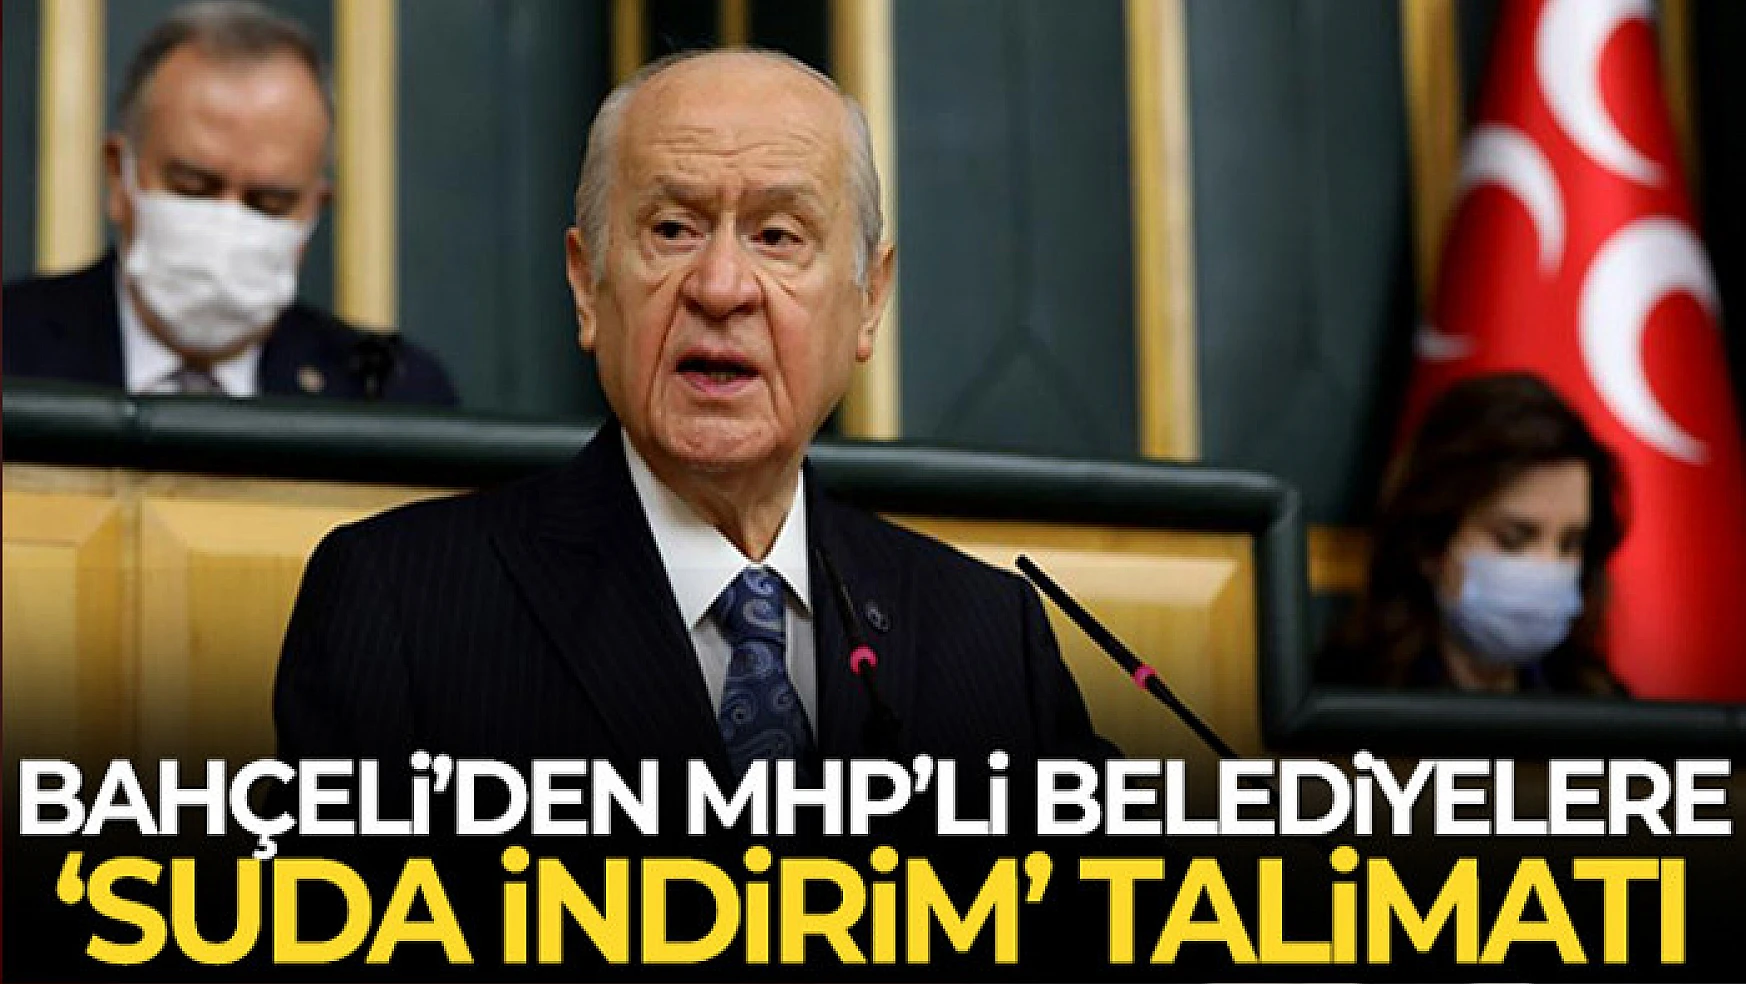 MHP Genel Başkanı Bahçeli'den MHP'li belediye başkanlarına 'suda indirim' talimatı